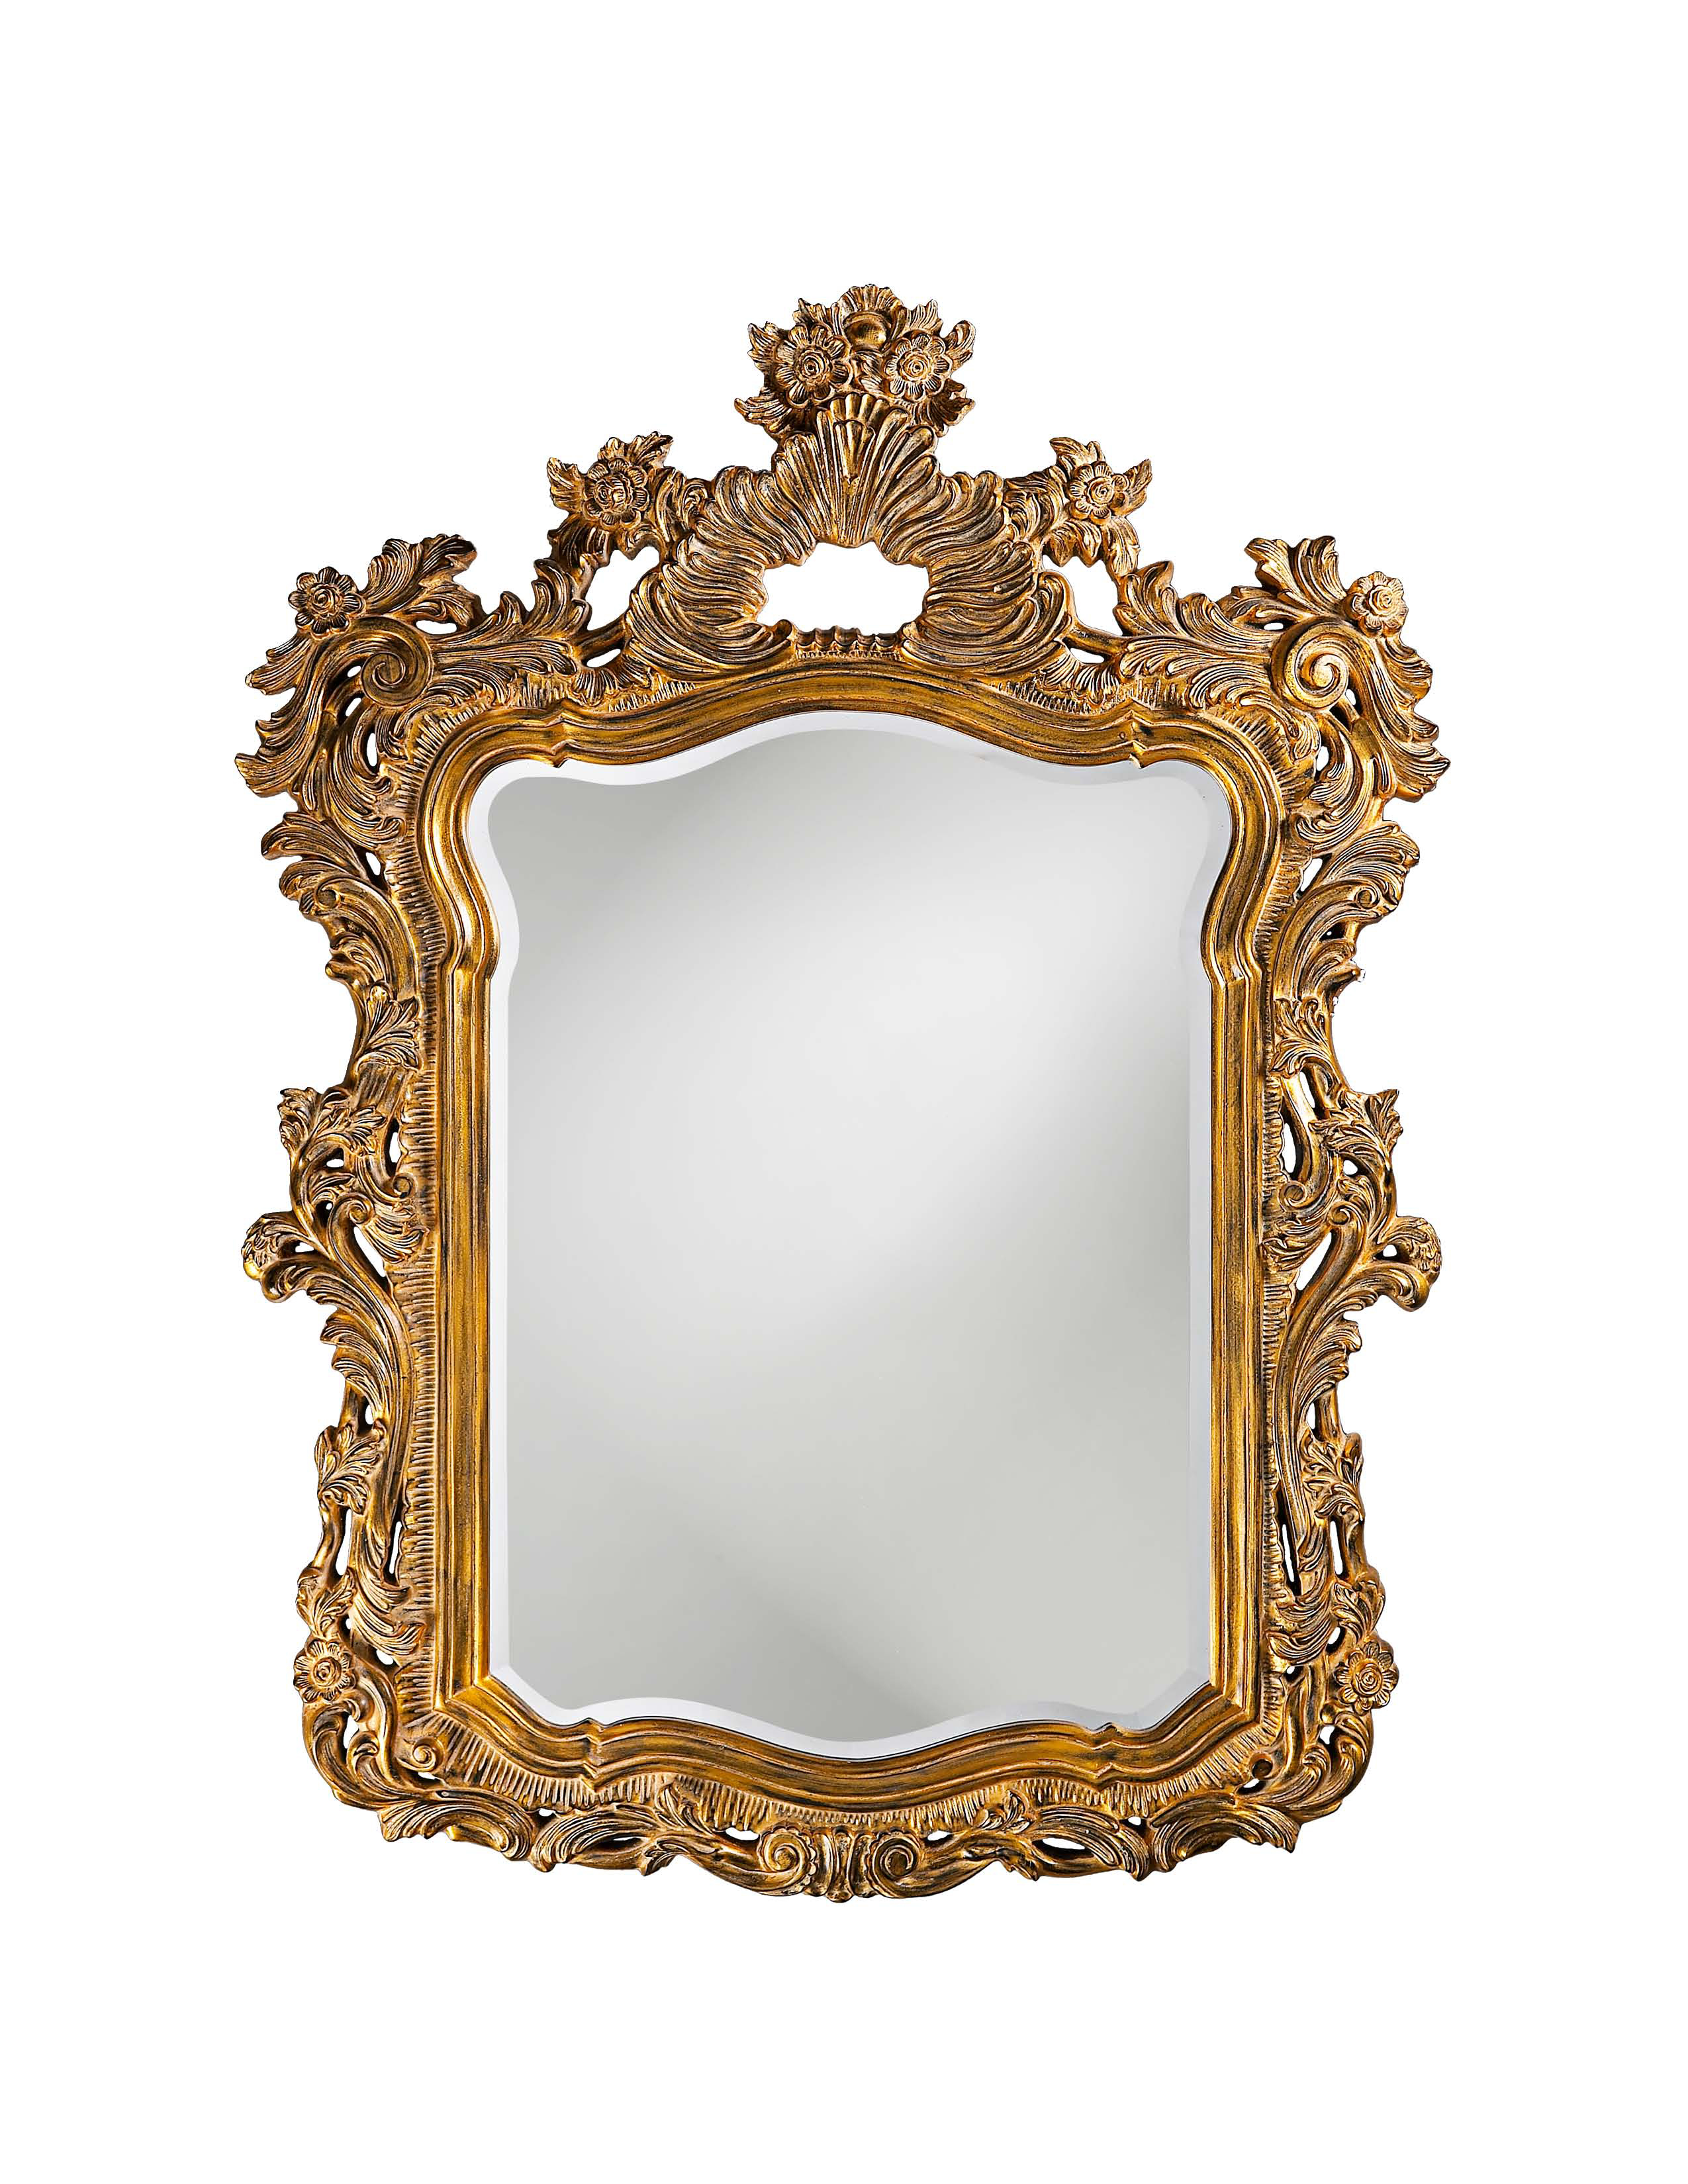 Howard Elliott Turner mirror